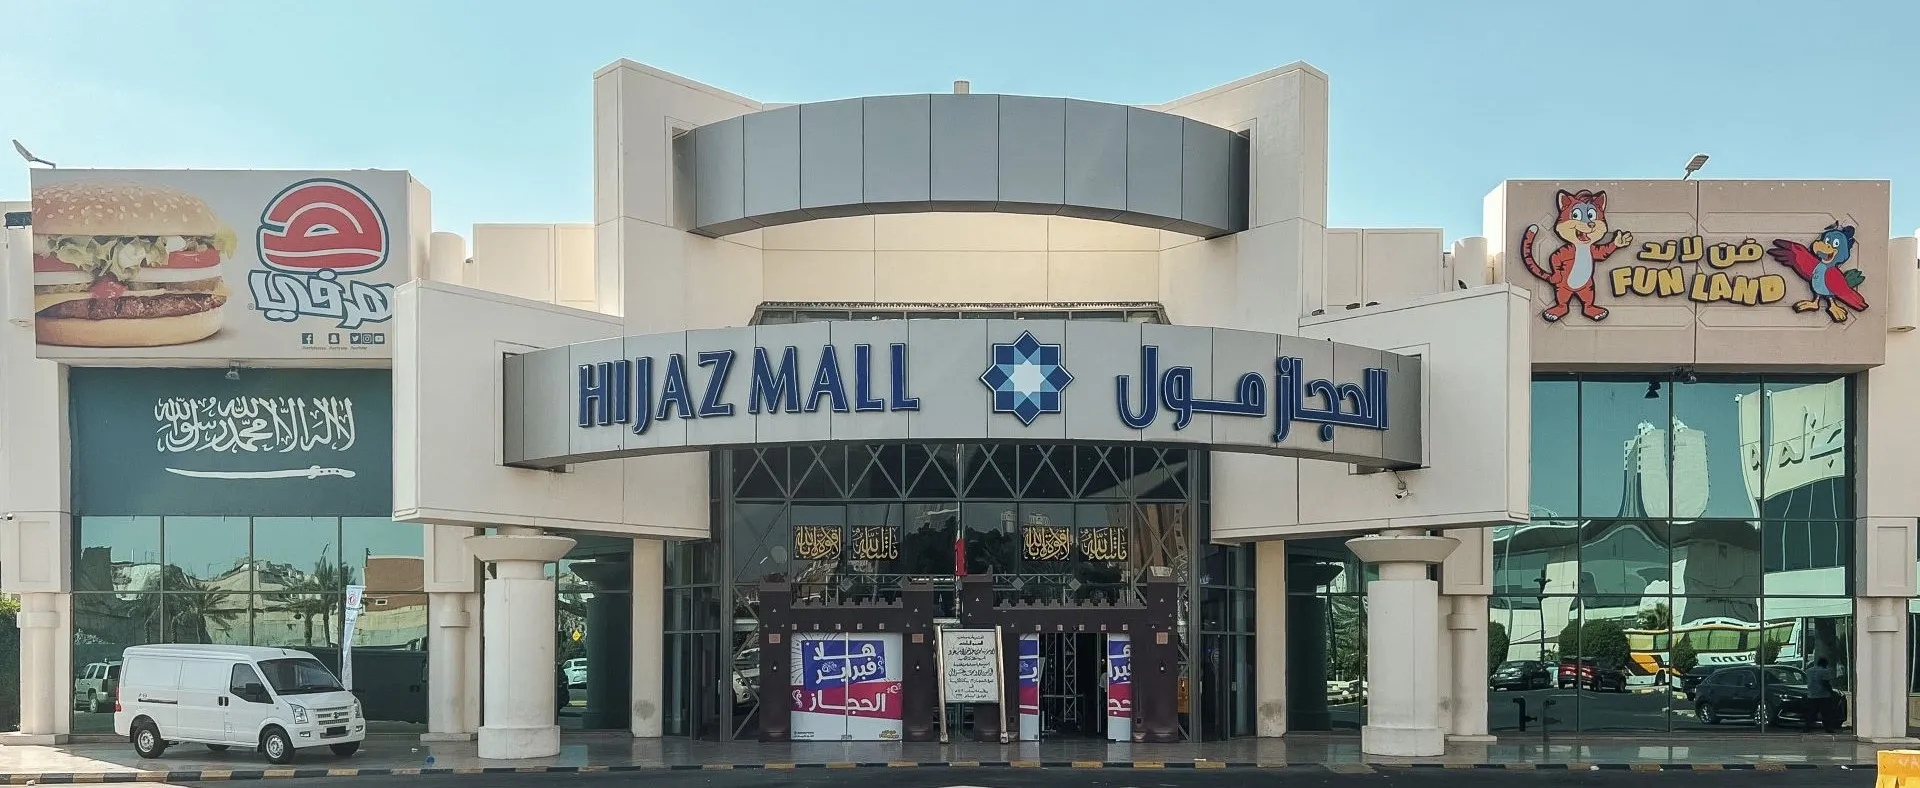 Alhijaz Mall